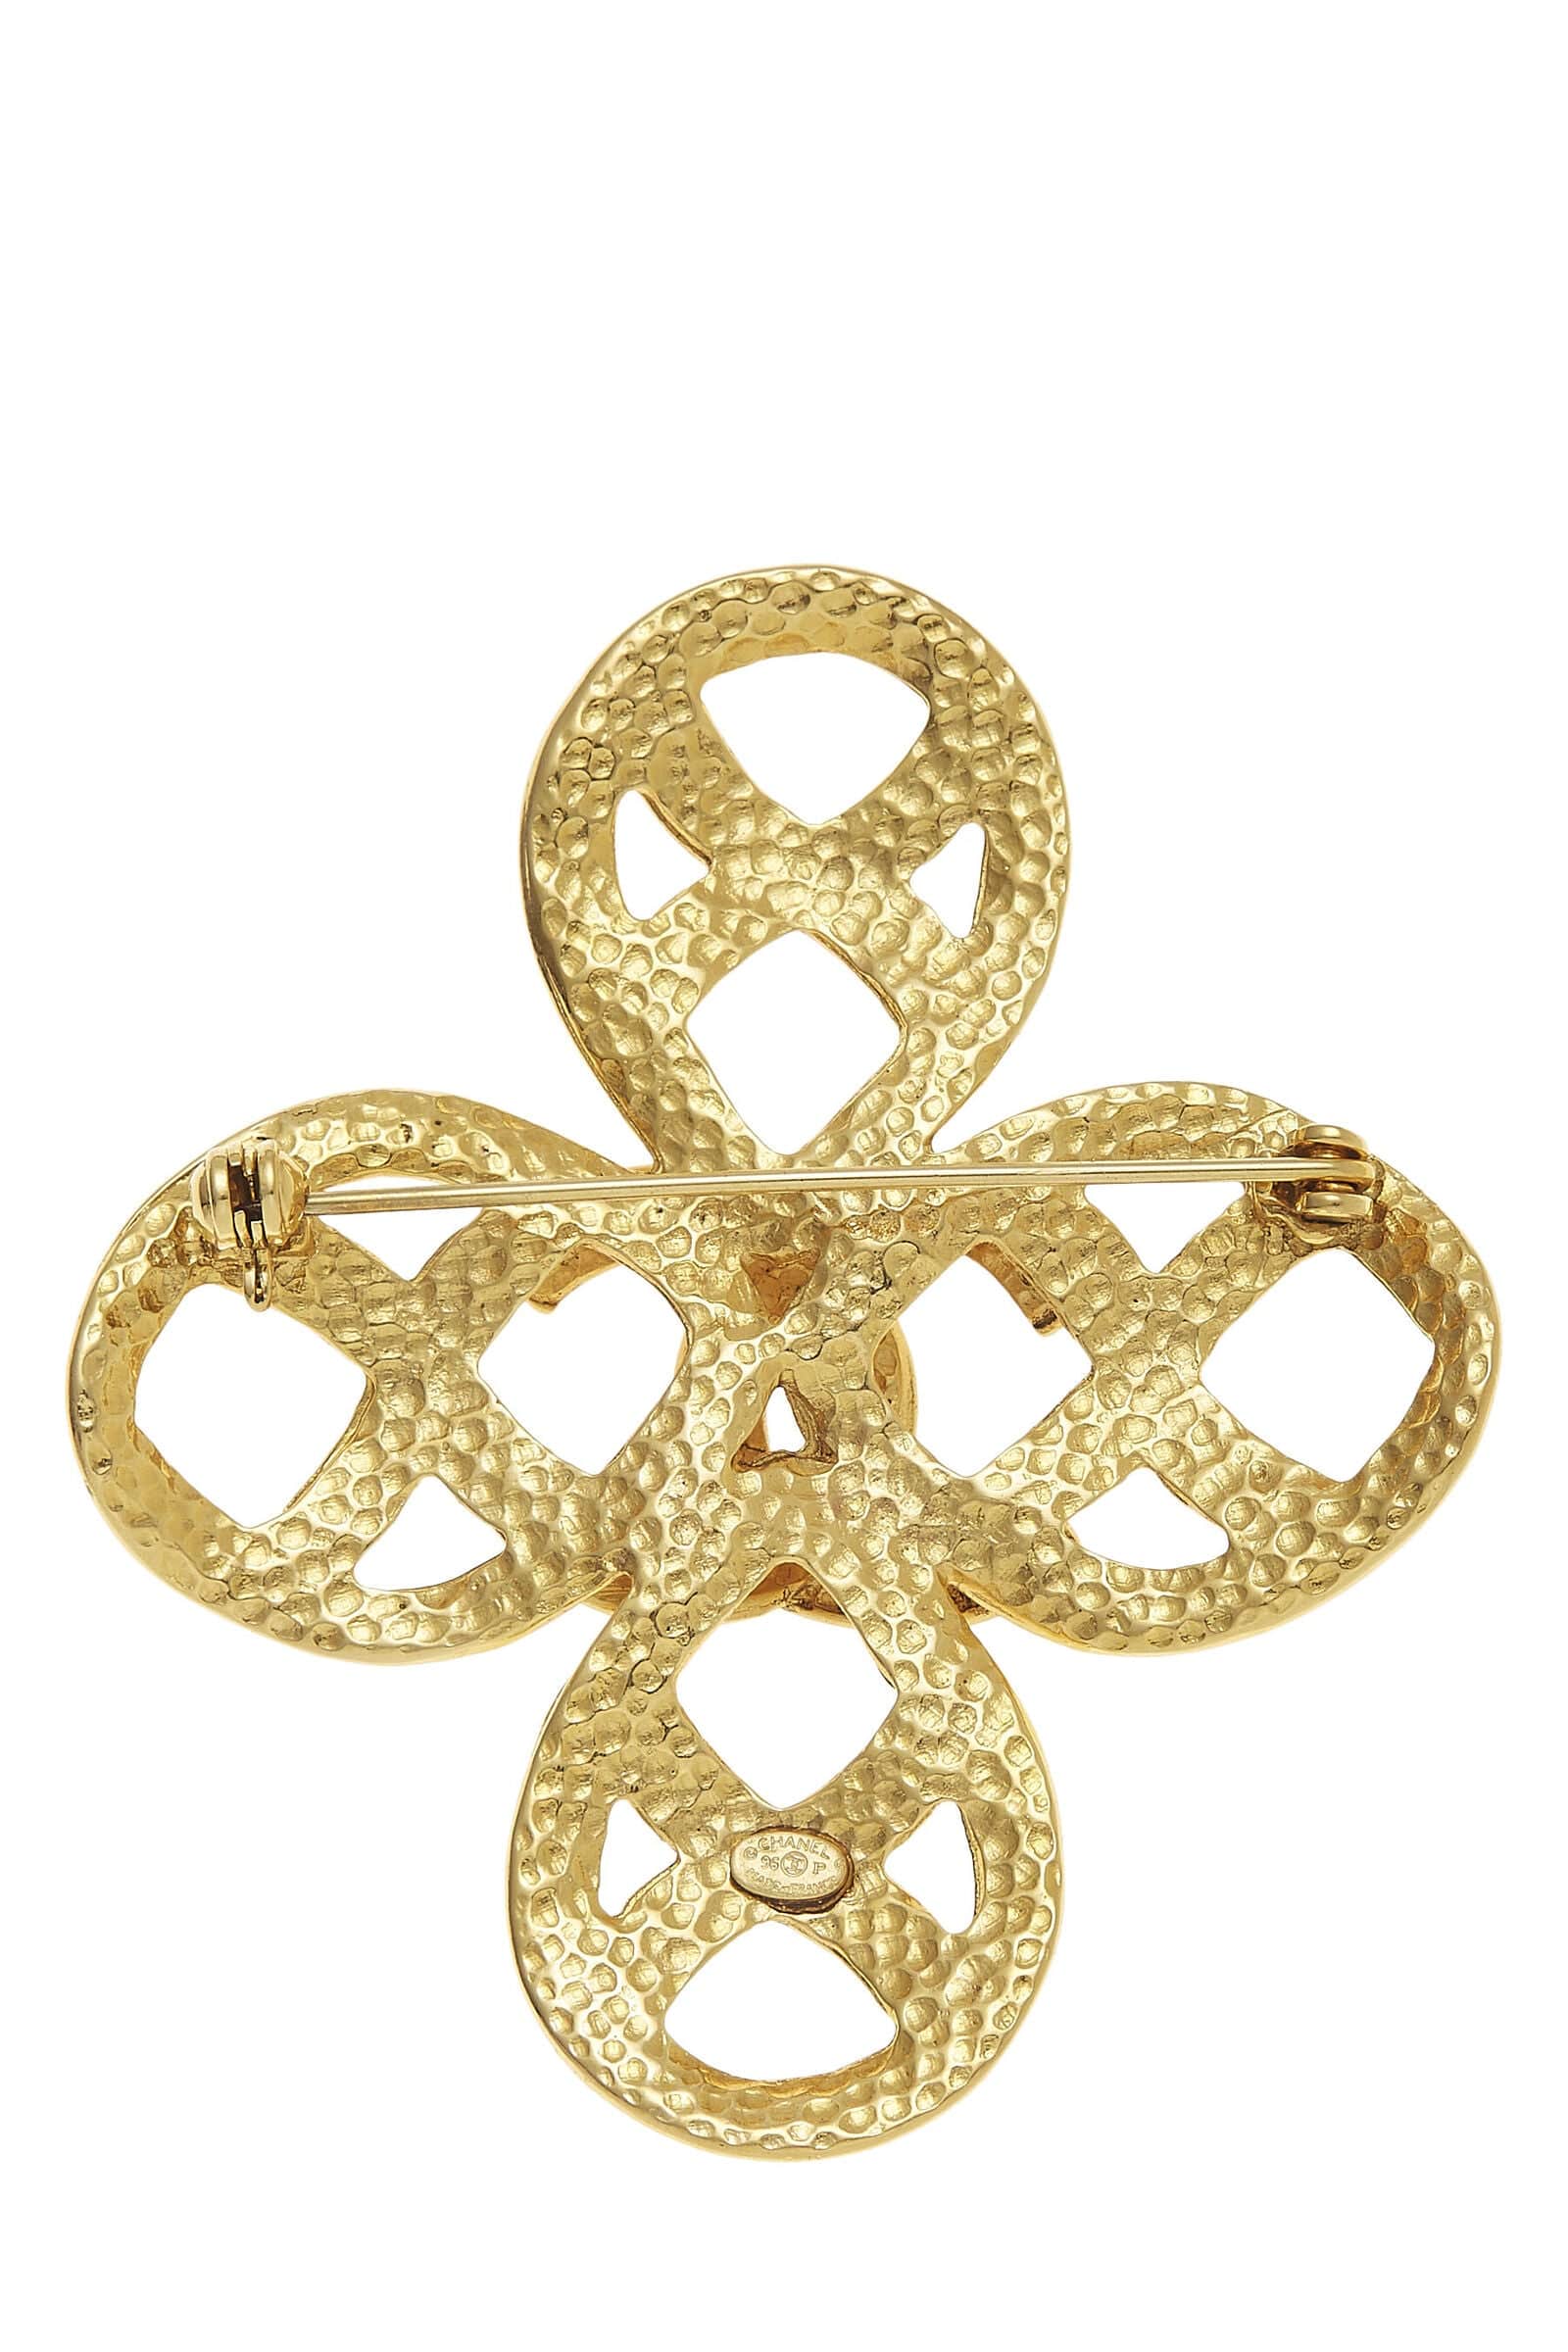 Chanel Chanel Gold Cconcross Pin Q6J1ZH17DB000